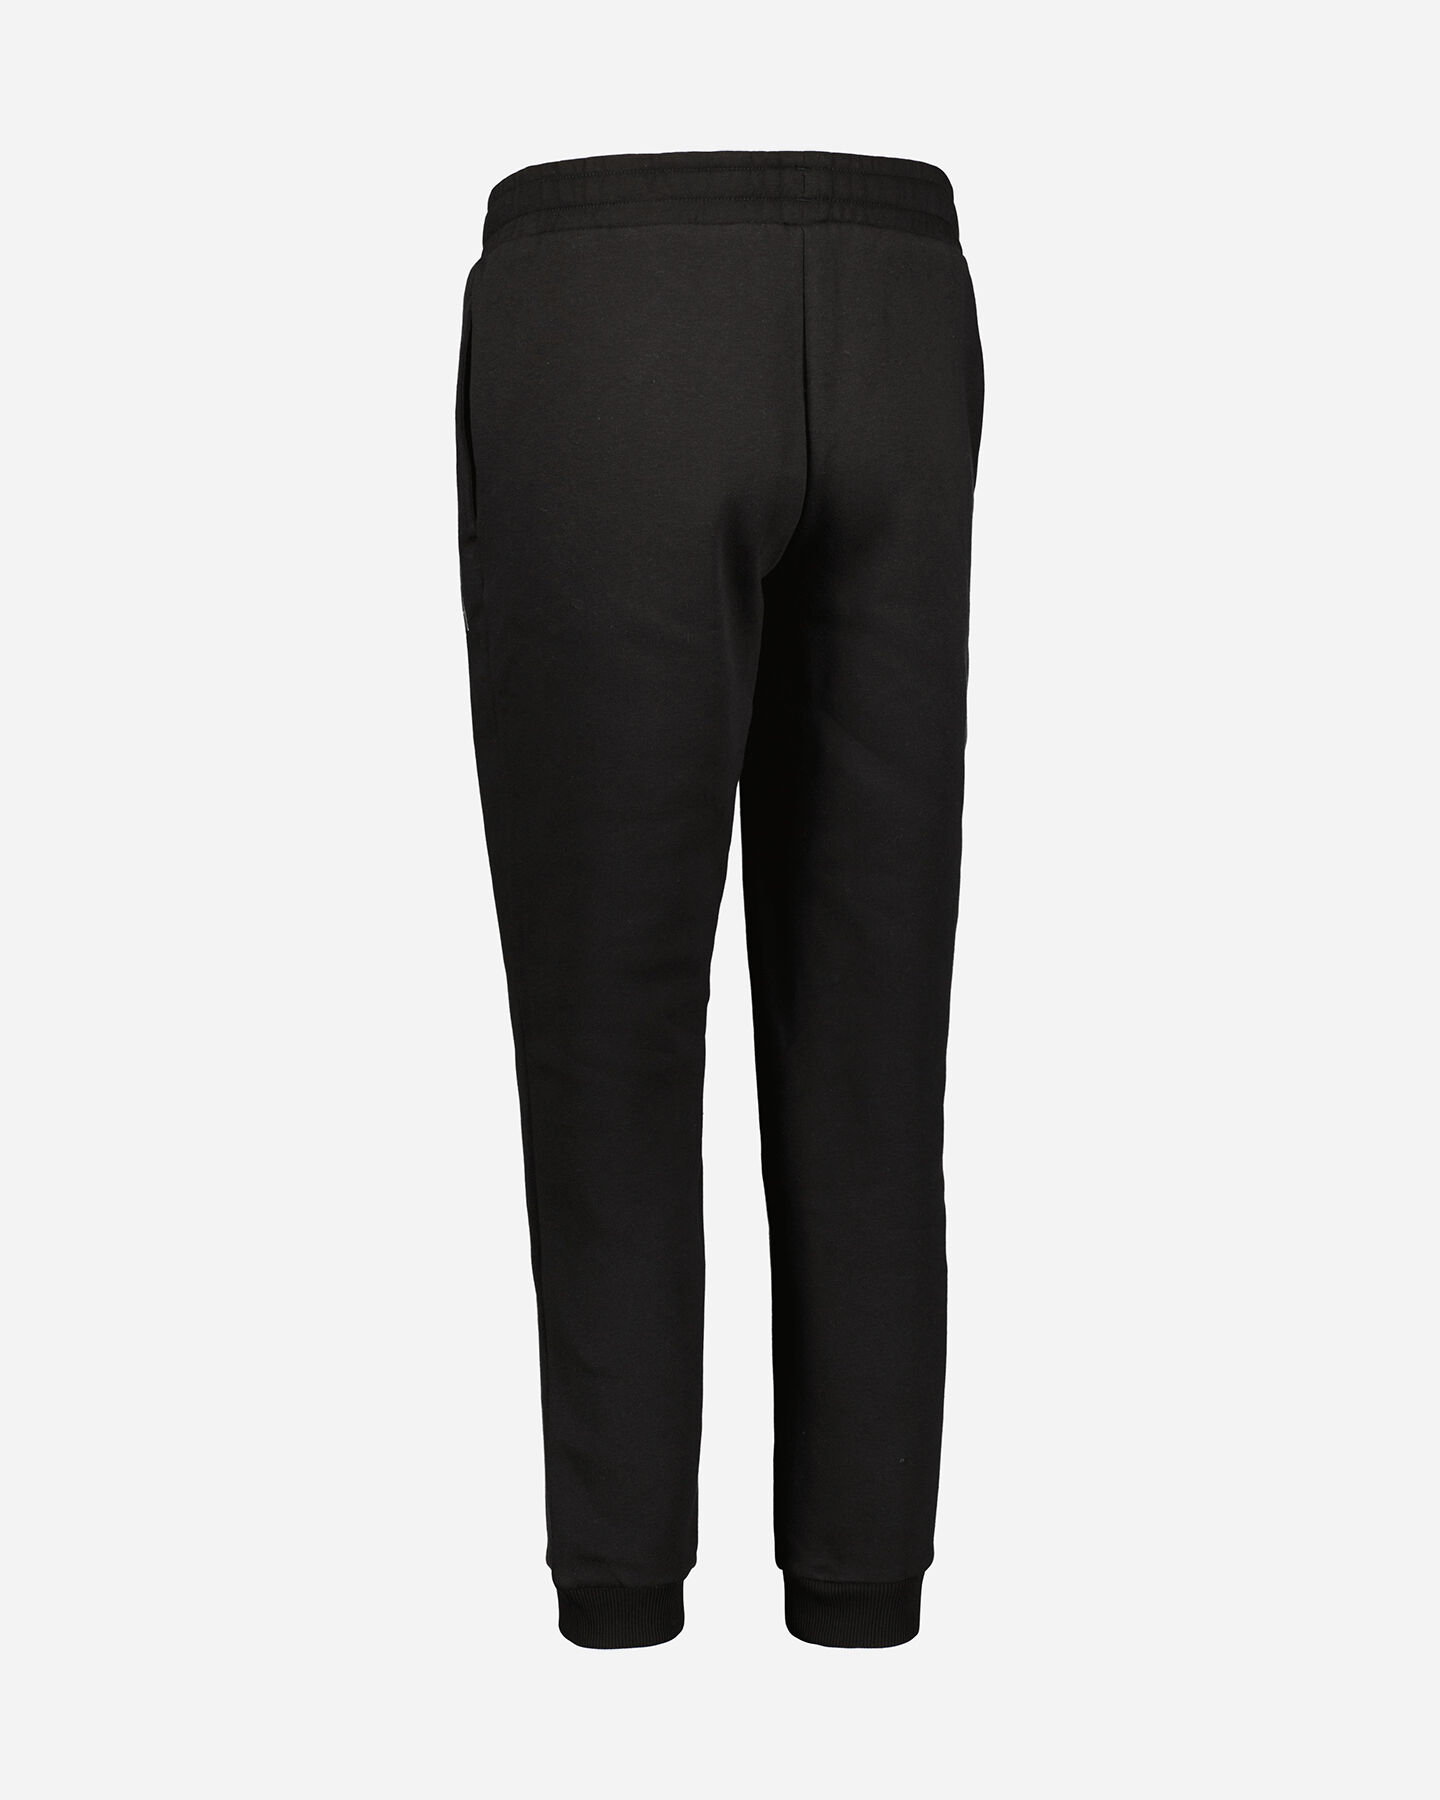  Pantalone PUMA SMALL LOGO W S5509929|01|L scatto 2